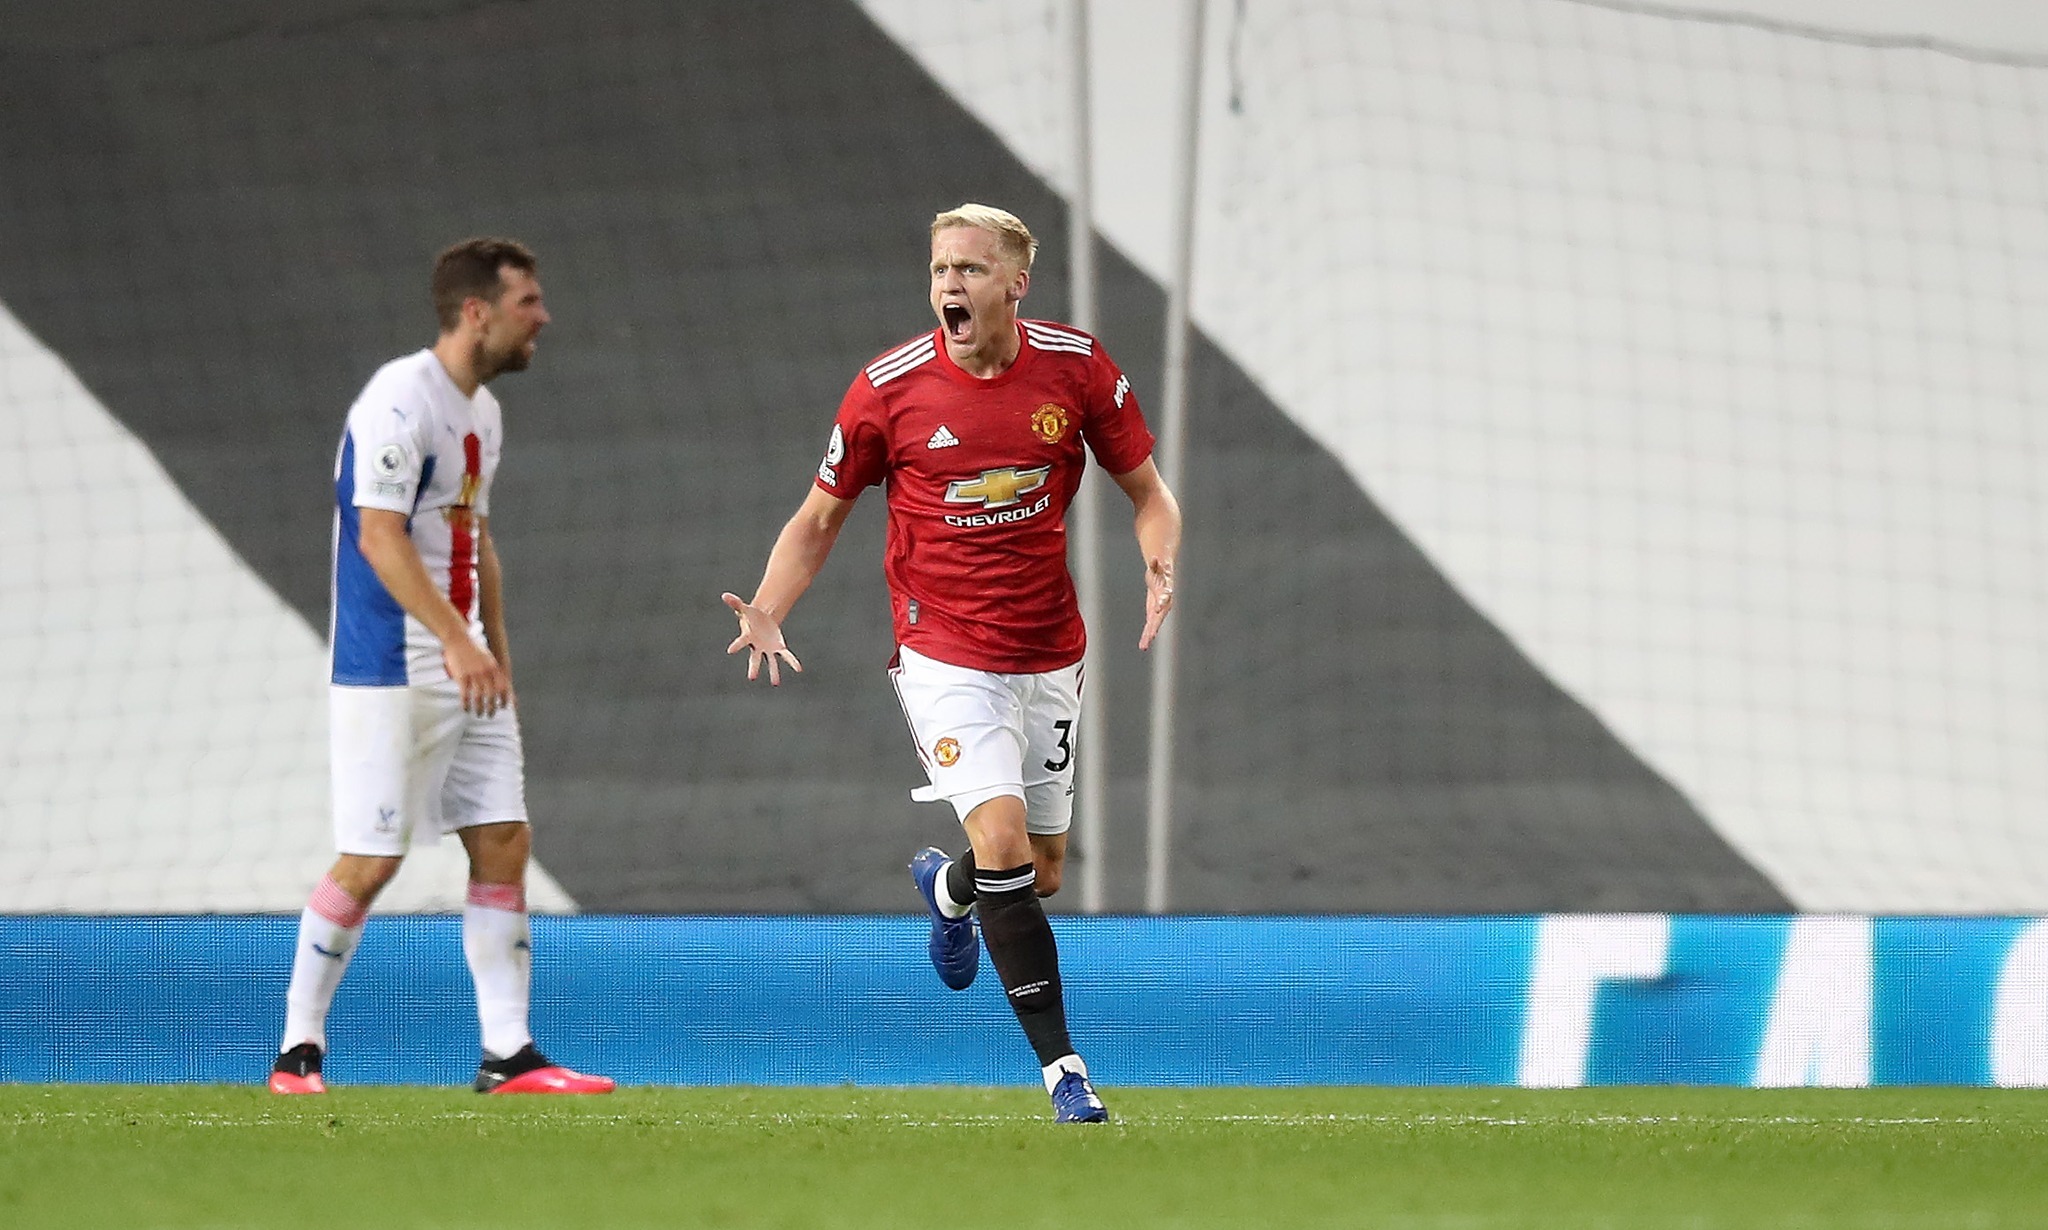 Đây là hình ảnh ăn mừng cuồng nhiệt của Van de Beek khi ghi bàn thắng đầu tiên cho Man United trong trận đấu chính thức đầu tiên, trước chính đối thủ Crystal Palace mà Quỷ đỏ sẽ gặp trong trận đấu tối nay.